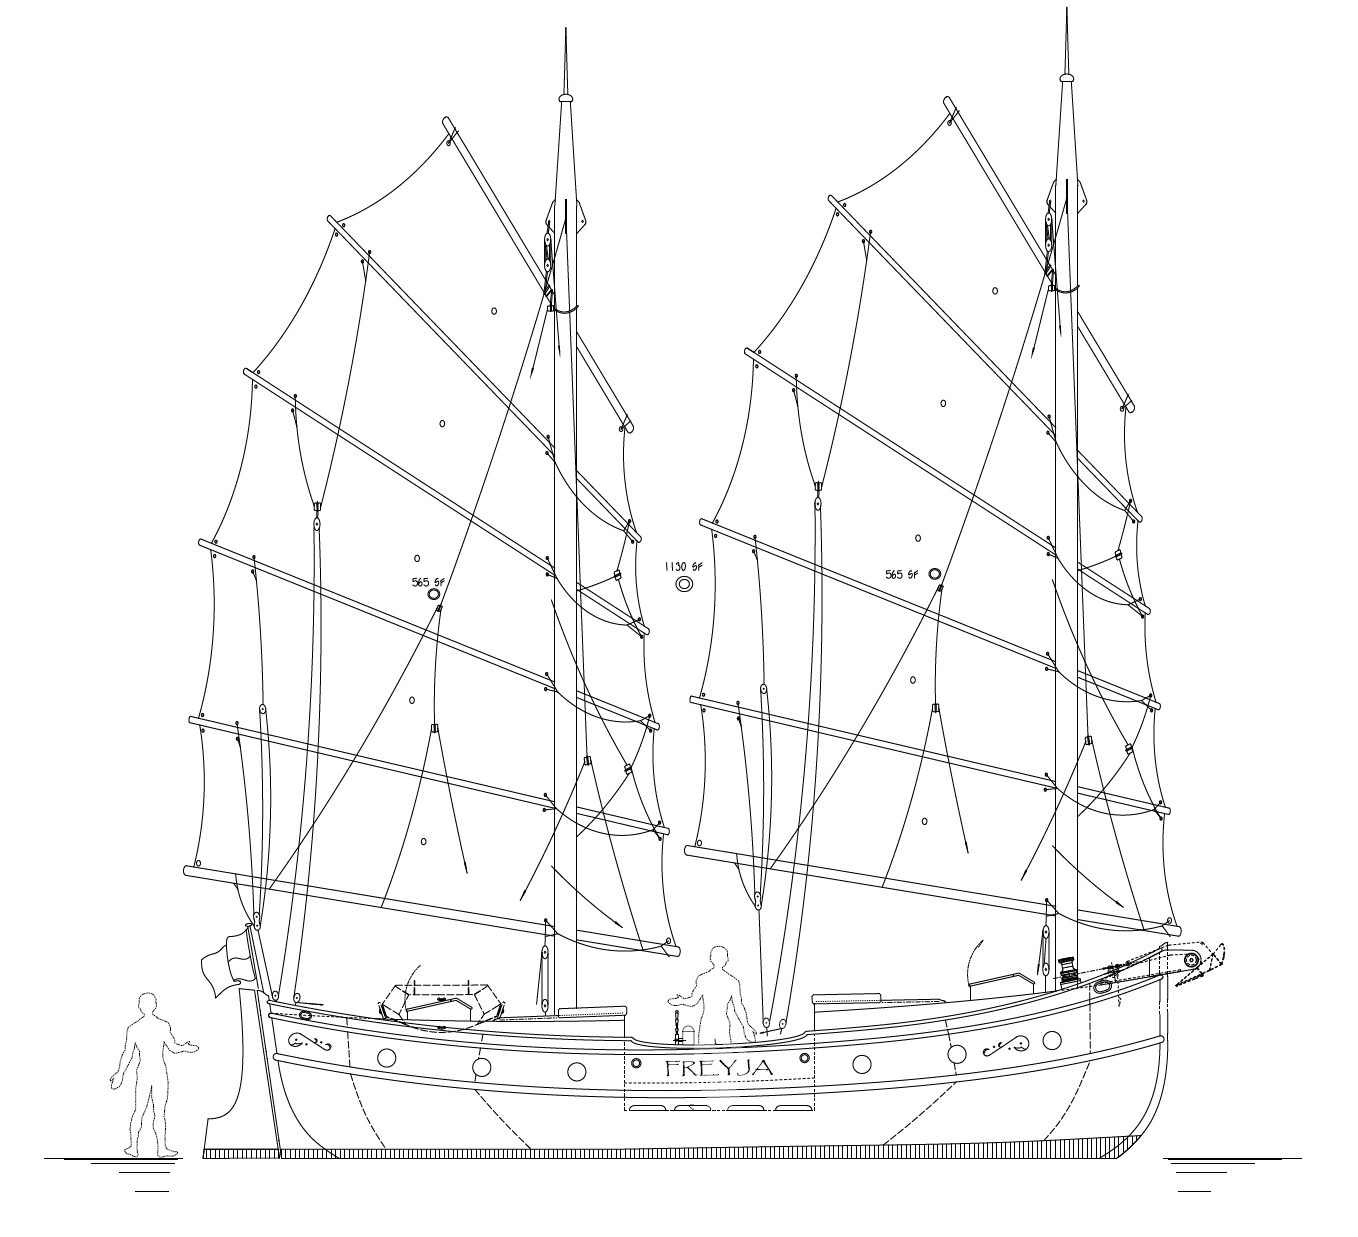 33' Junk Schooner FREYJA - Kasten Marine Design, Inc.